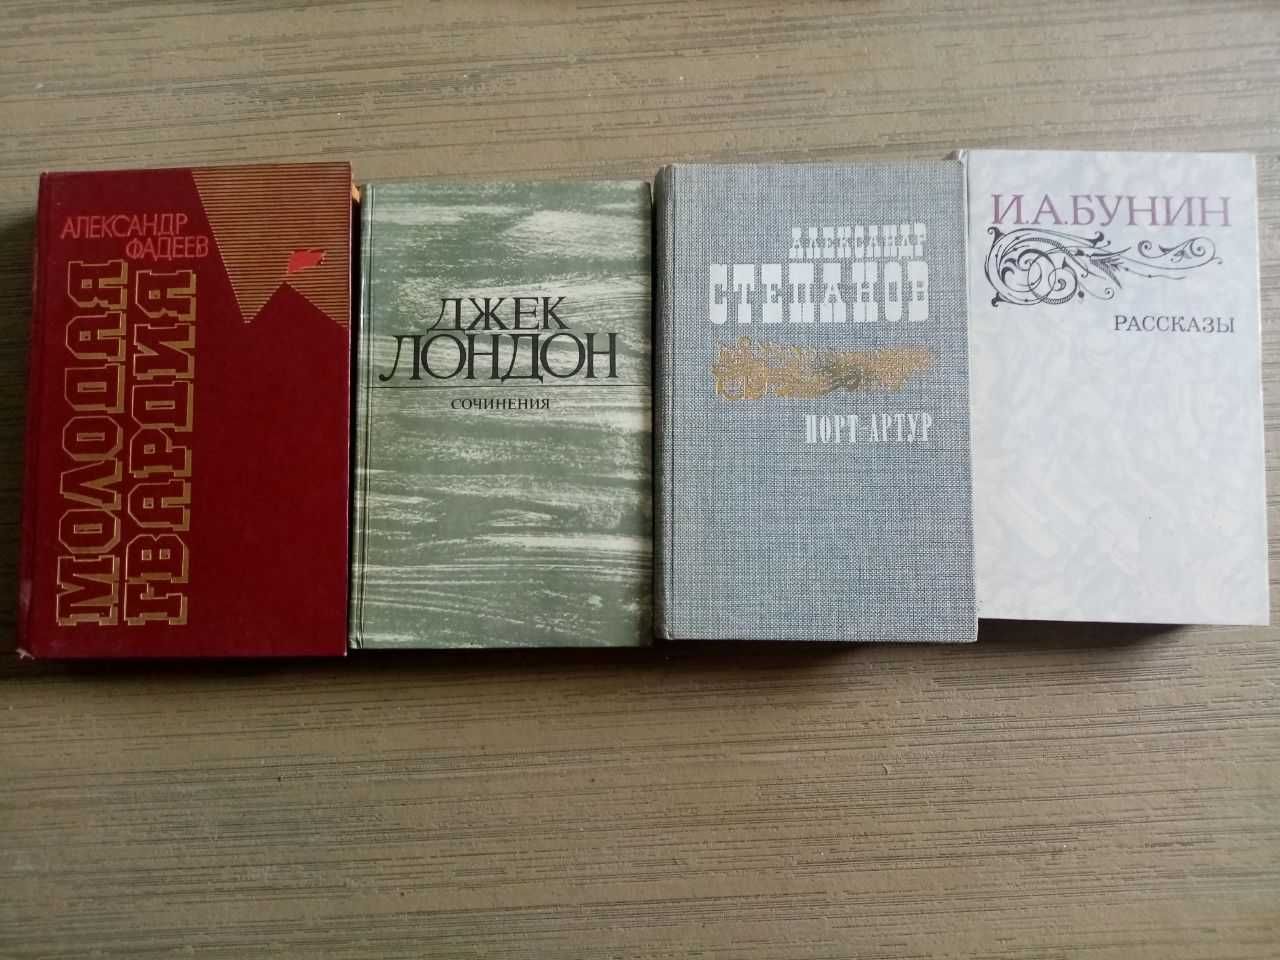 Колекція книг: М. Гоголь, І. Тургенєв, О. Бальзак, І. Бунін і тд